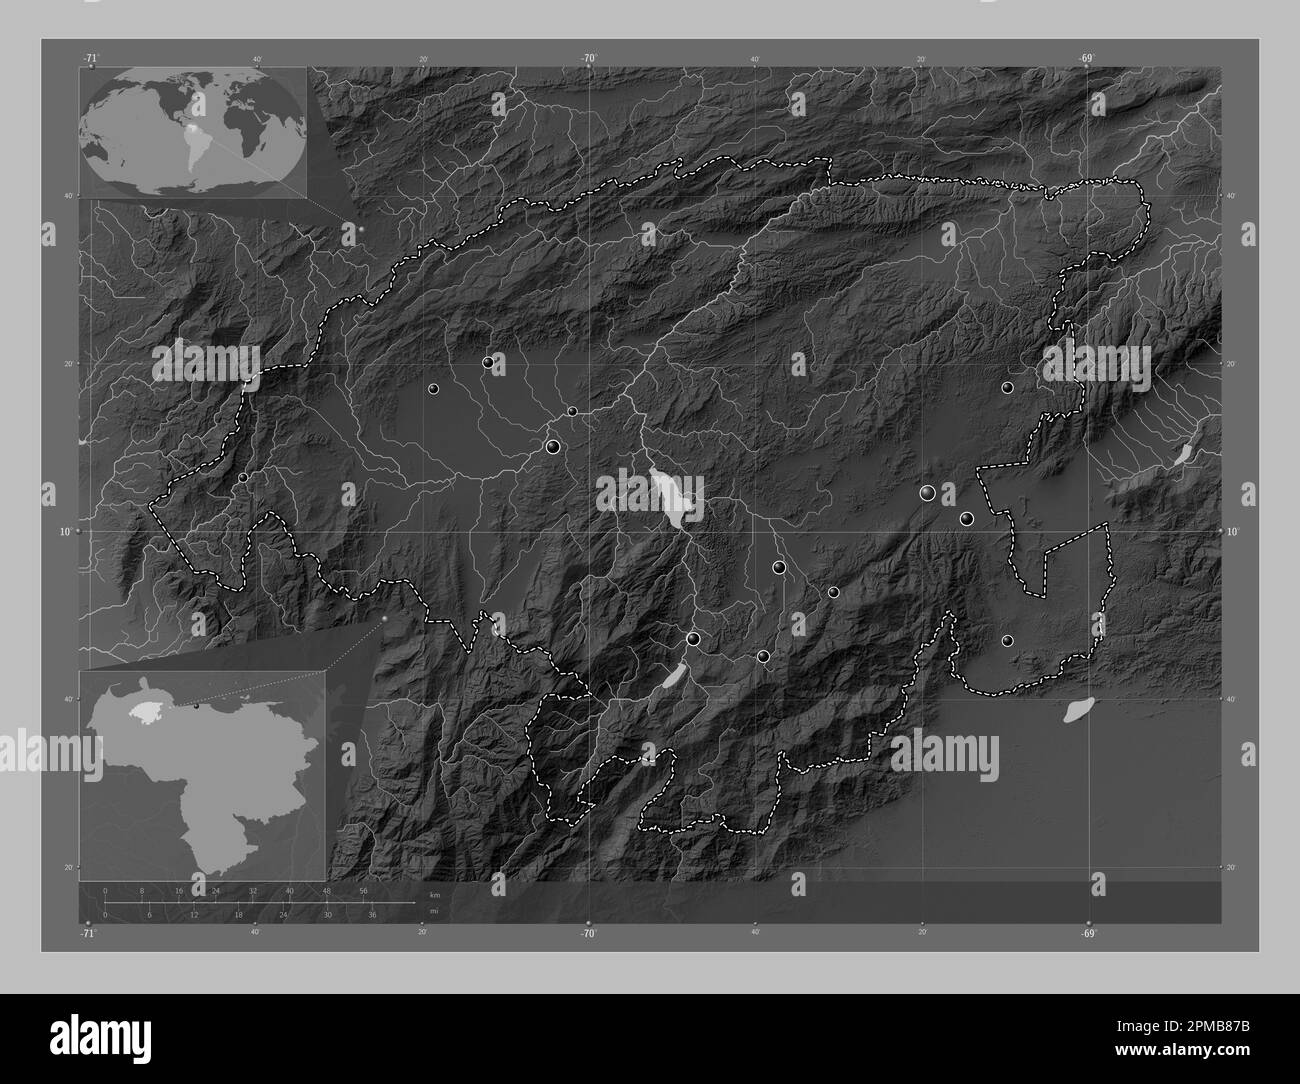 Lara, Staat Venezuela. Grauskala-Höhenkarte mit Seen und Flüssen. Standorte der wichtigsten Städte der Region. Eckkarten für zusätzliche Standorte Stockfoto